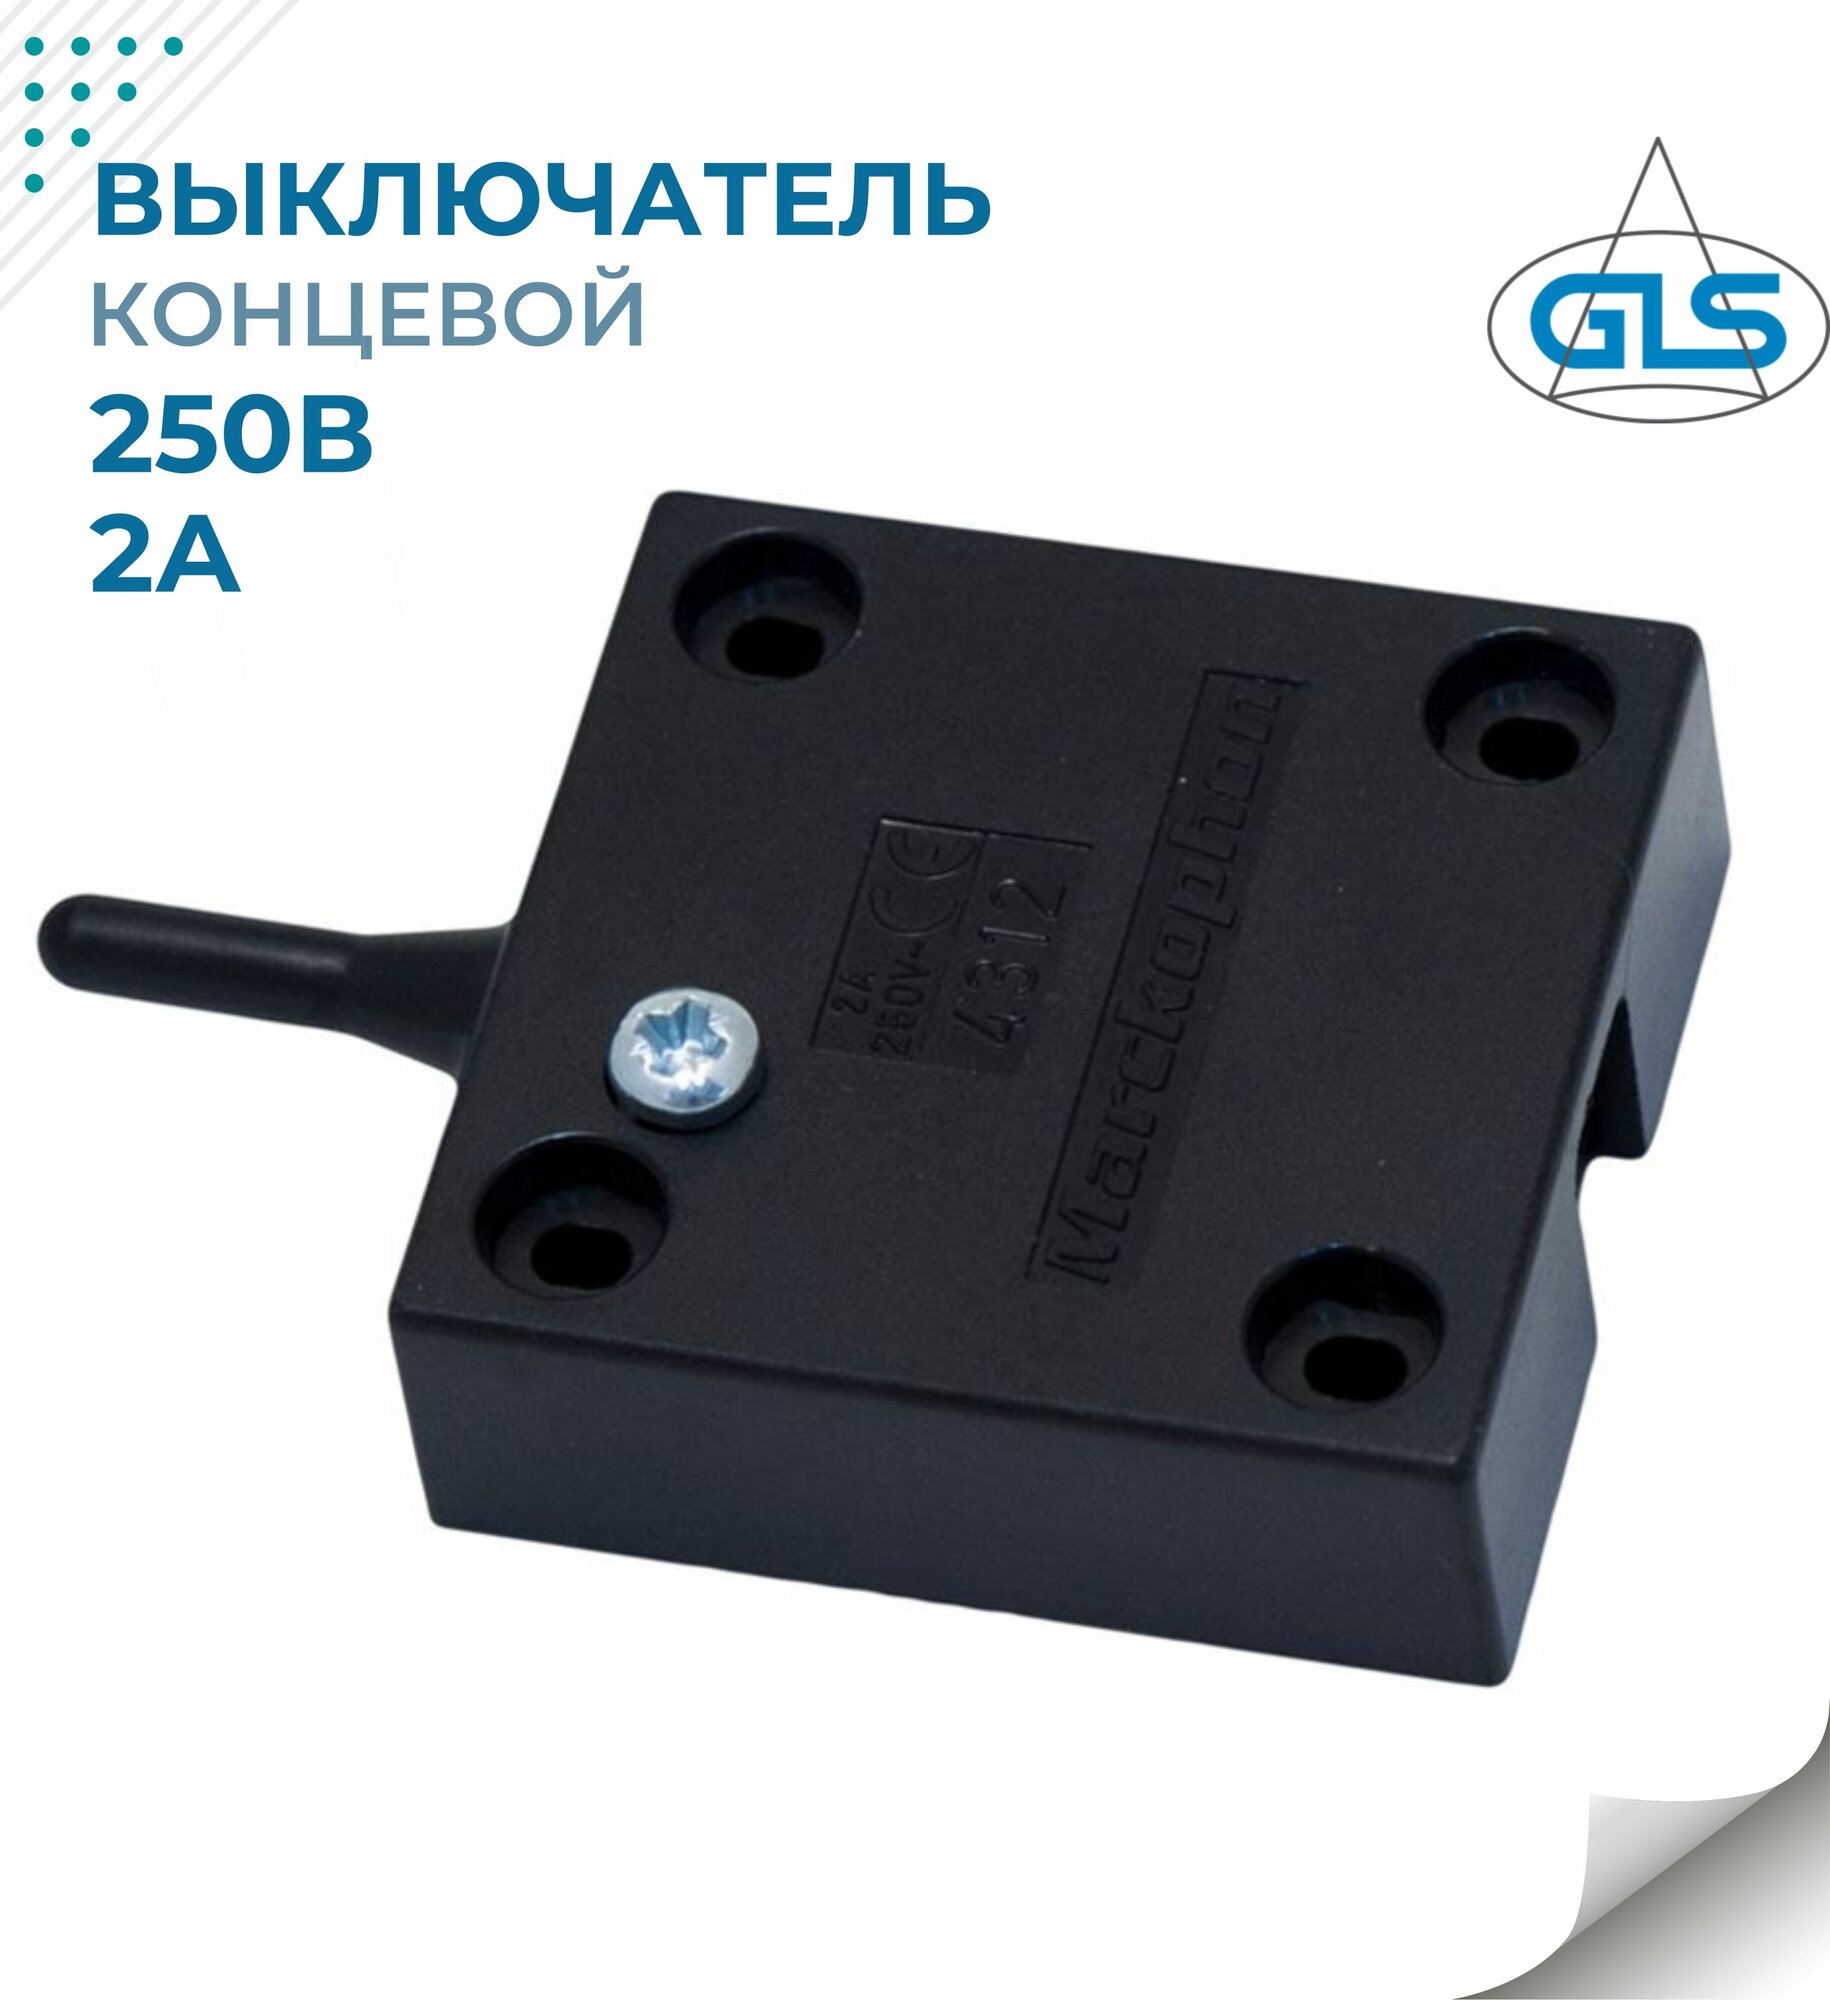 Выключатель мебельный концевой 4313 GLS 220V 2A для шкафчика с распашными и раздвижными дверцами черный